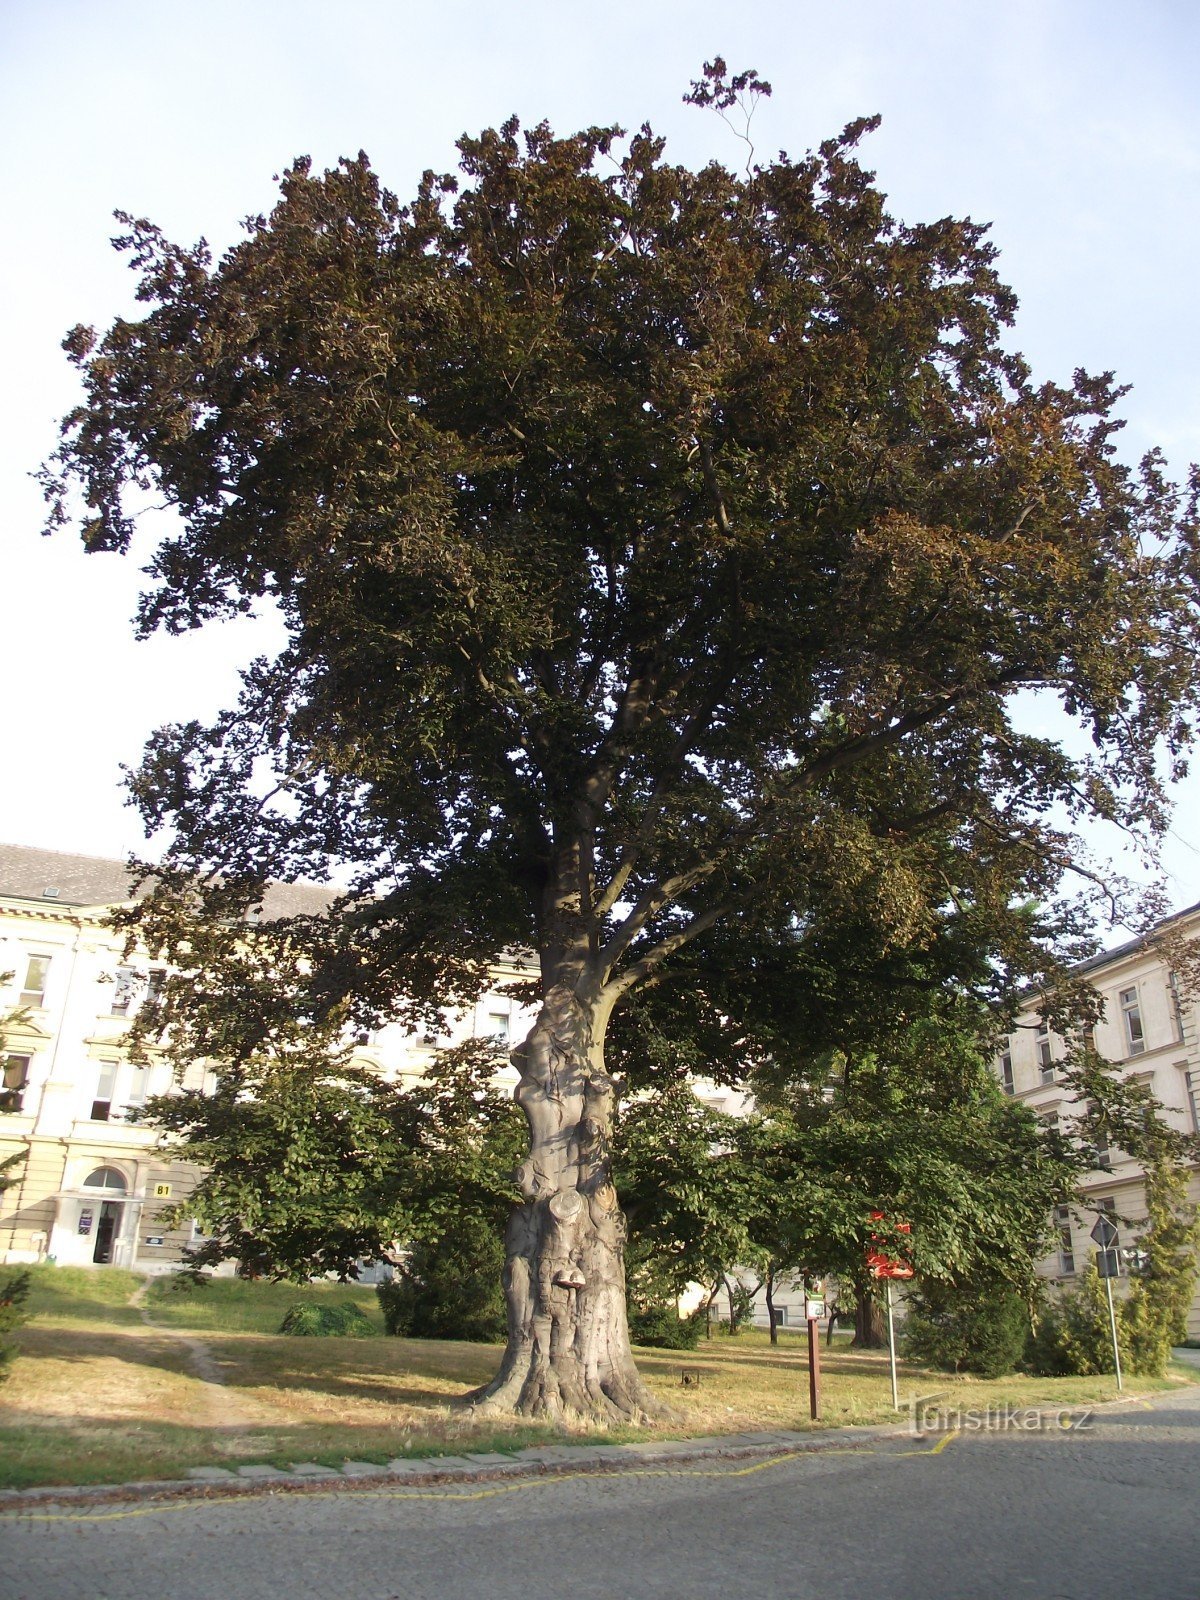 Olomouc - cây sồi tưởng niệm (gần cổng cũ của bệnh viện đại học)